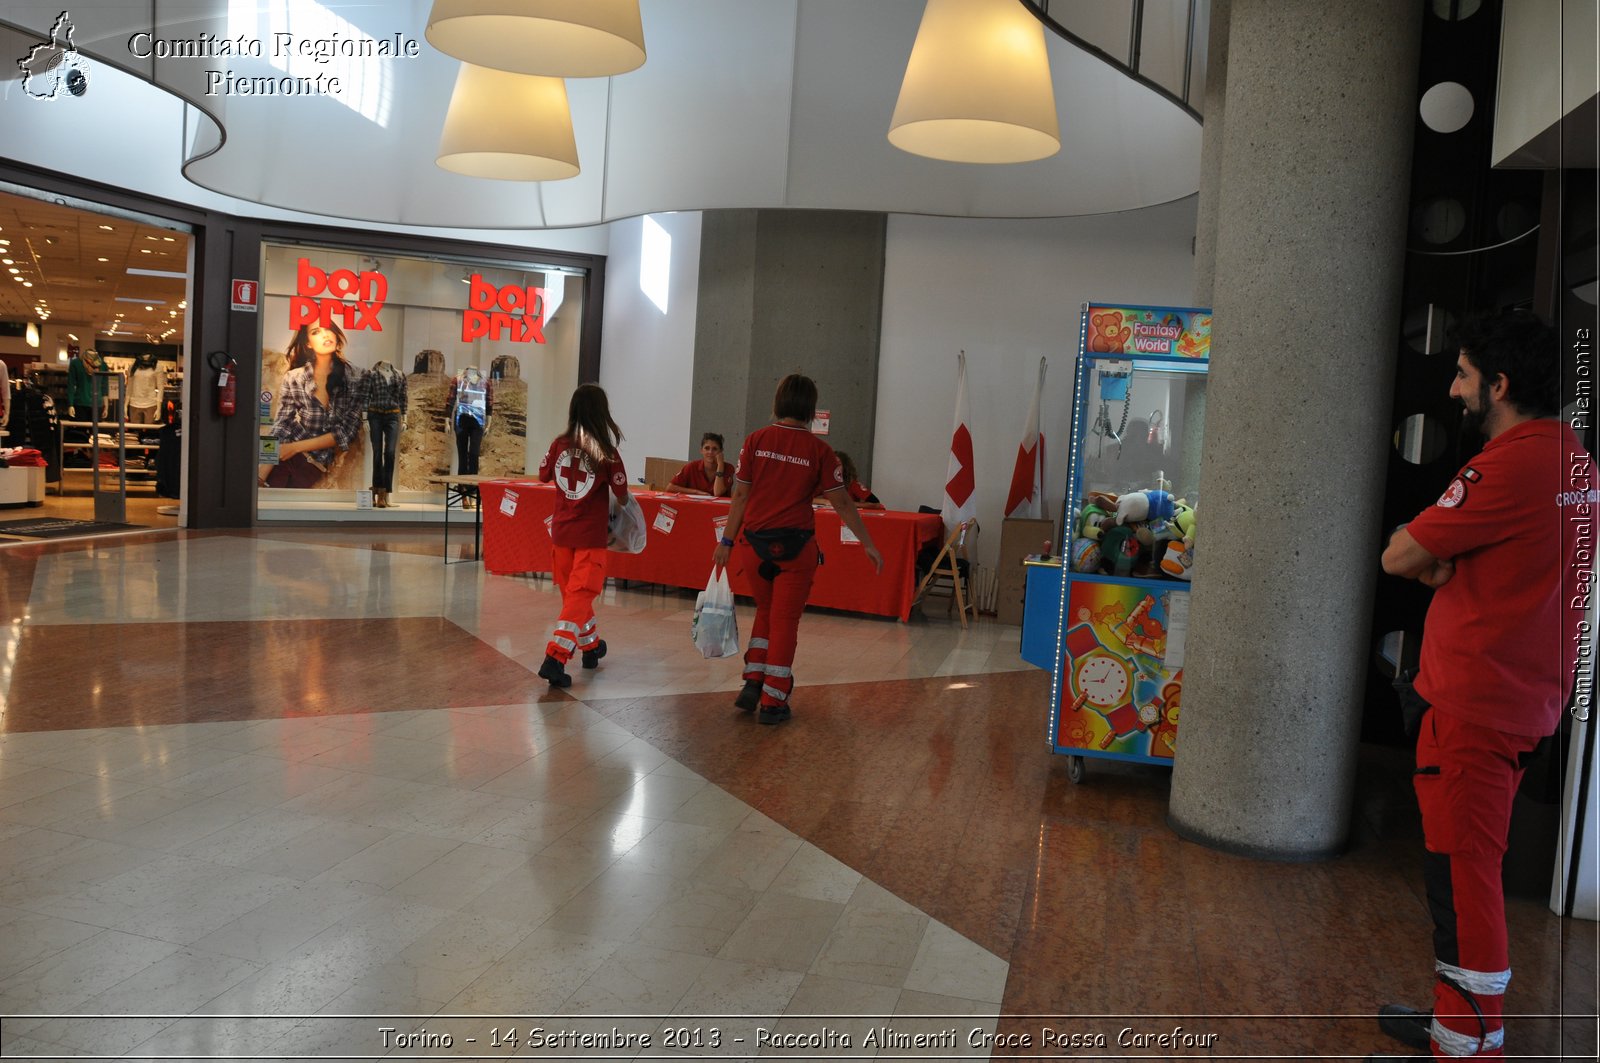 Torino - 14 Settembre 2013 - Raccolta Alimenti Croce Rossa Carefour - Croce Rossa Italiana - Comitato Regionale del Piemonte